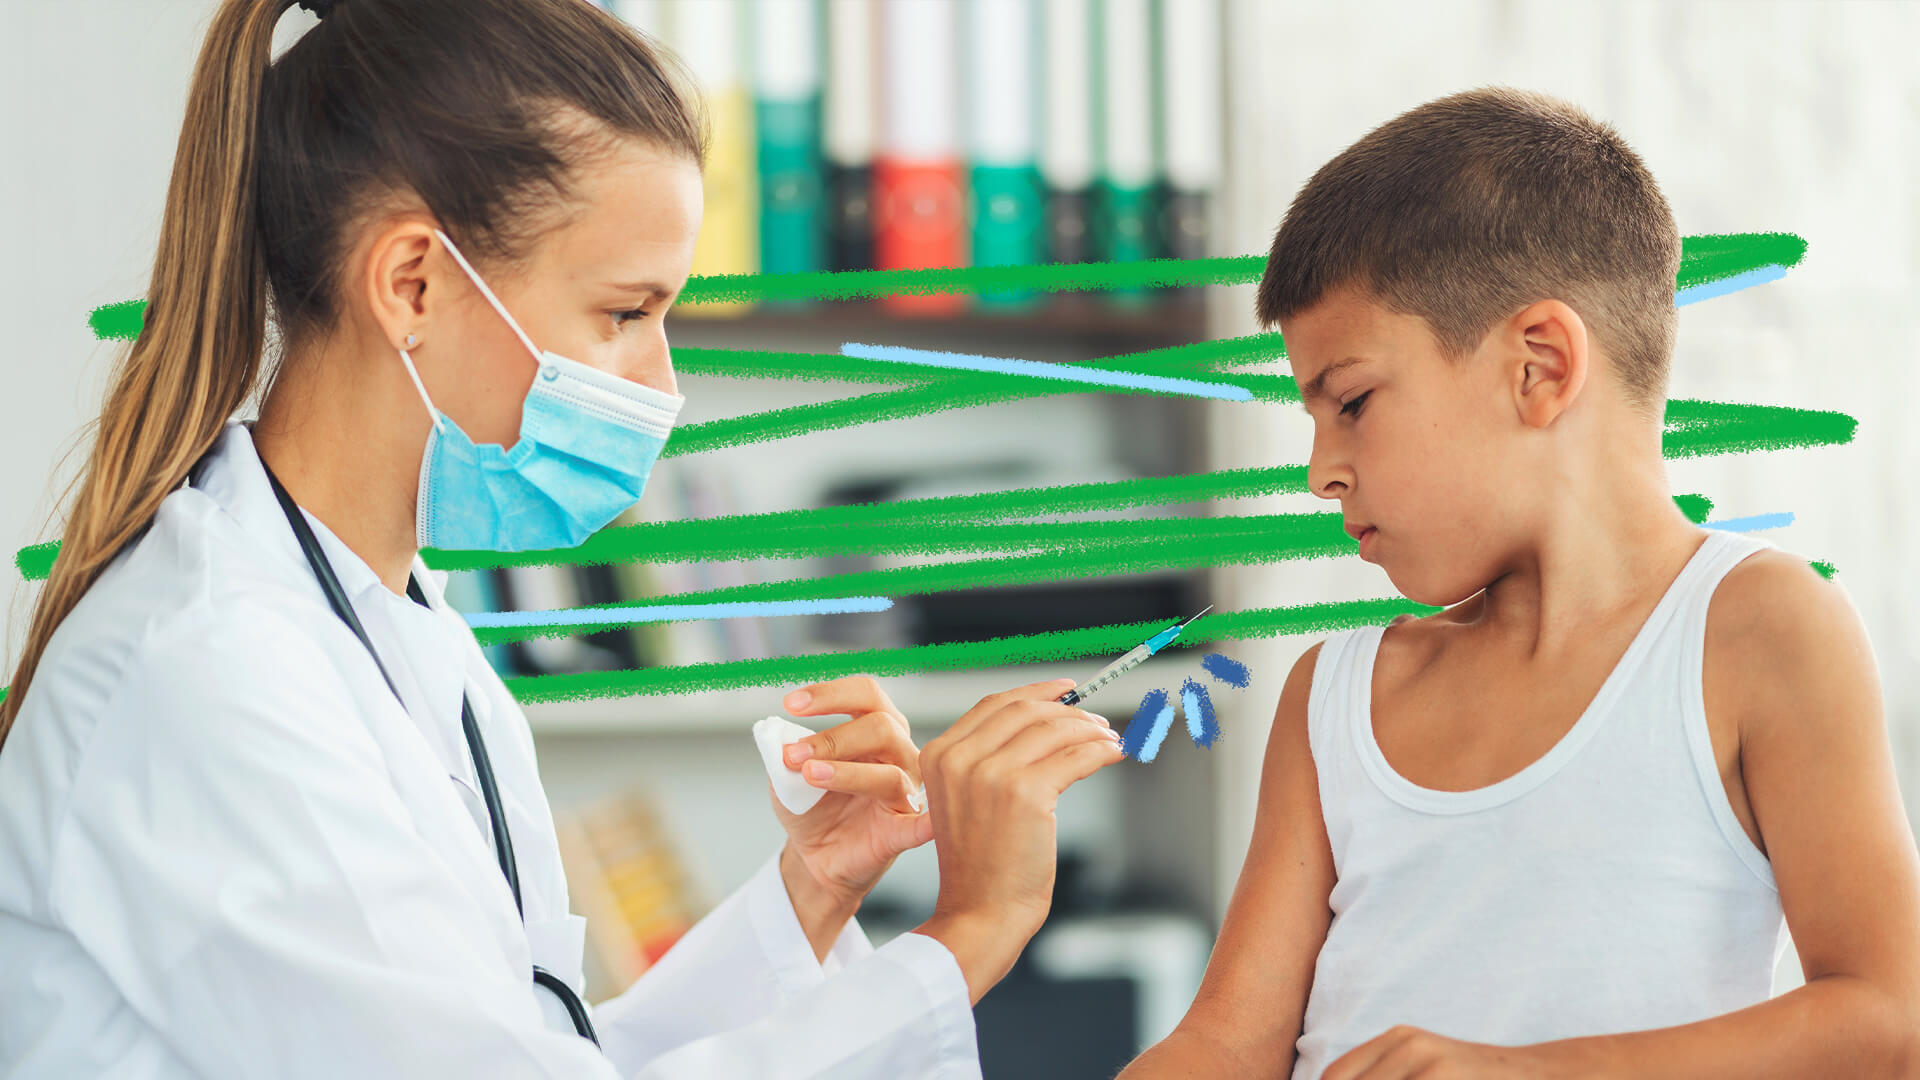 Um menino de pele clara e regata branca olha para uma vacina, segurada por uma profissional da saúde, que usa máscara cirúrgica azul e jaleco branco.